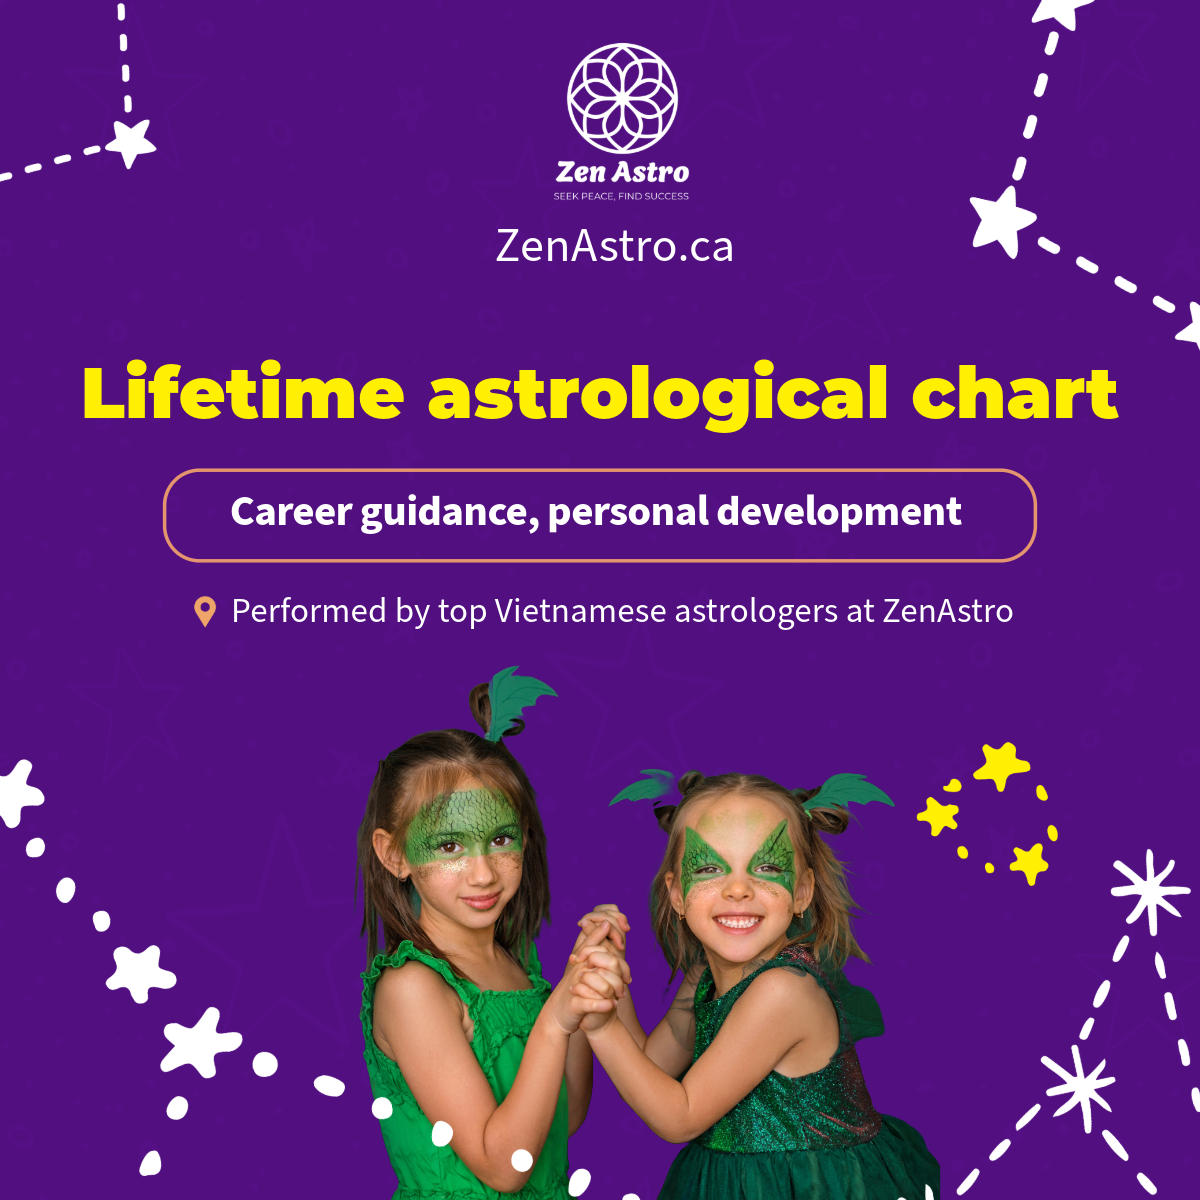 Explore your personal horoscope with ZenAstro's Horoscope service